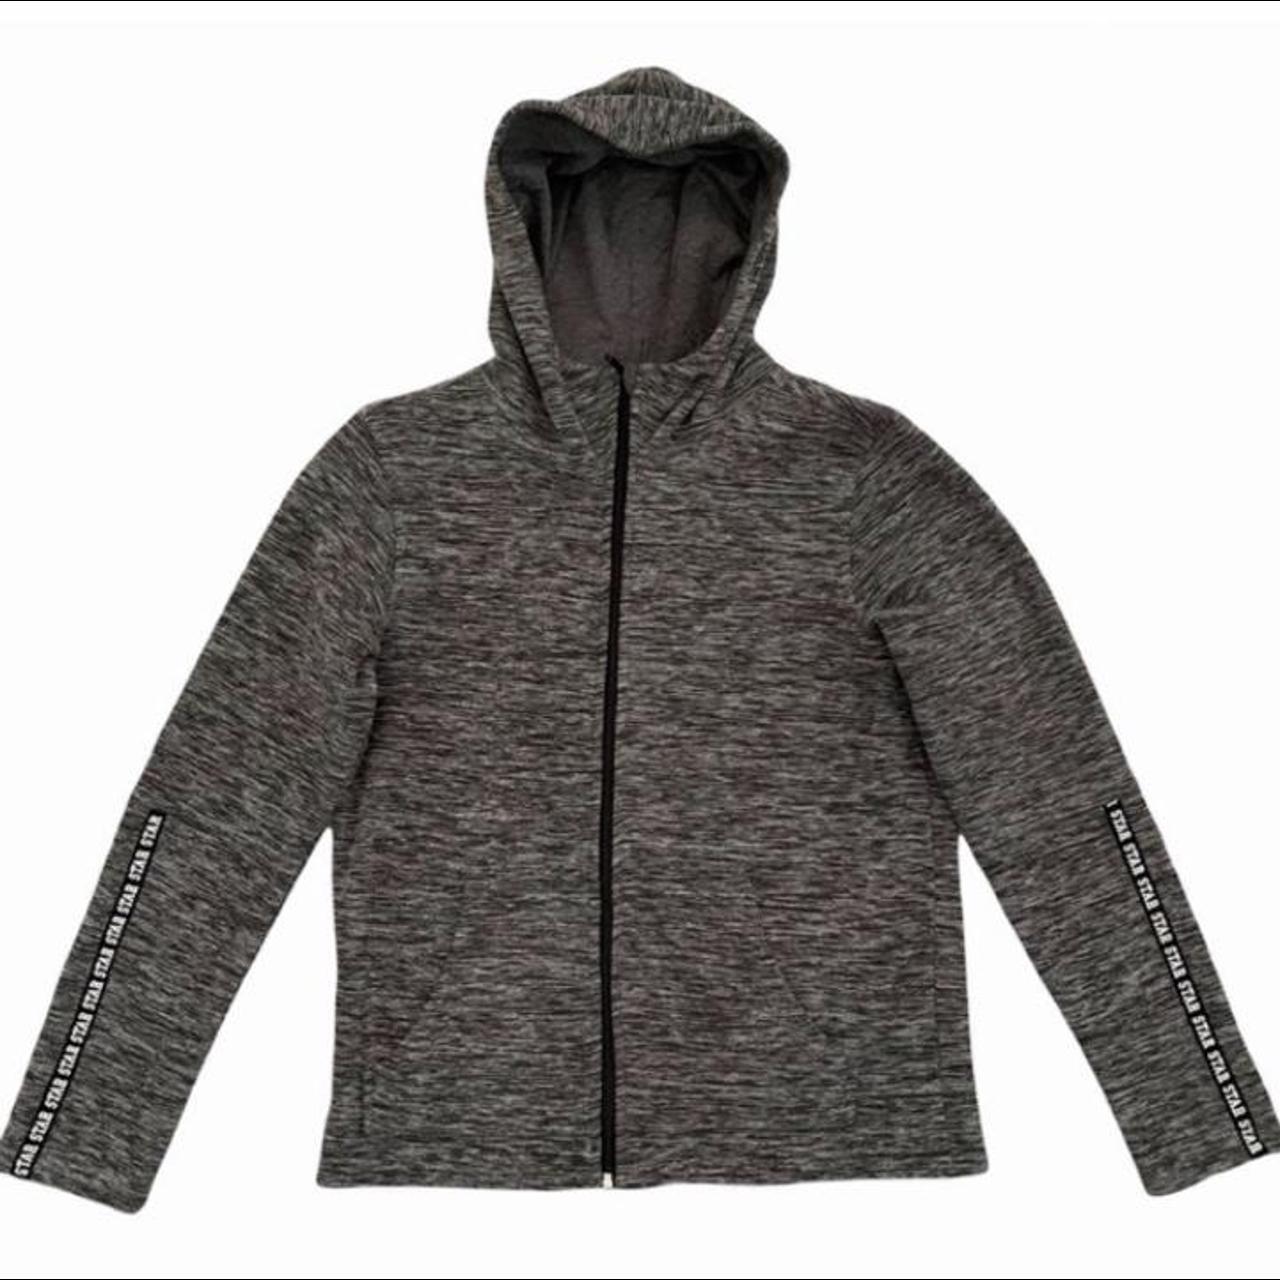 Product Image 1 - Sports hoodie 
Grey sports hoodie